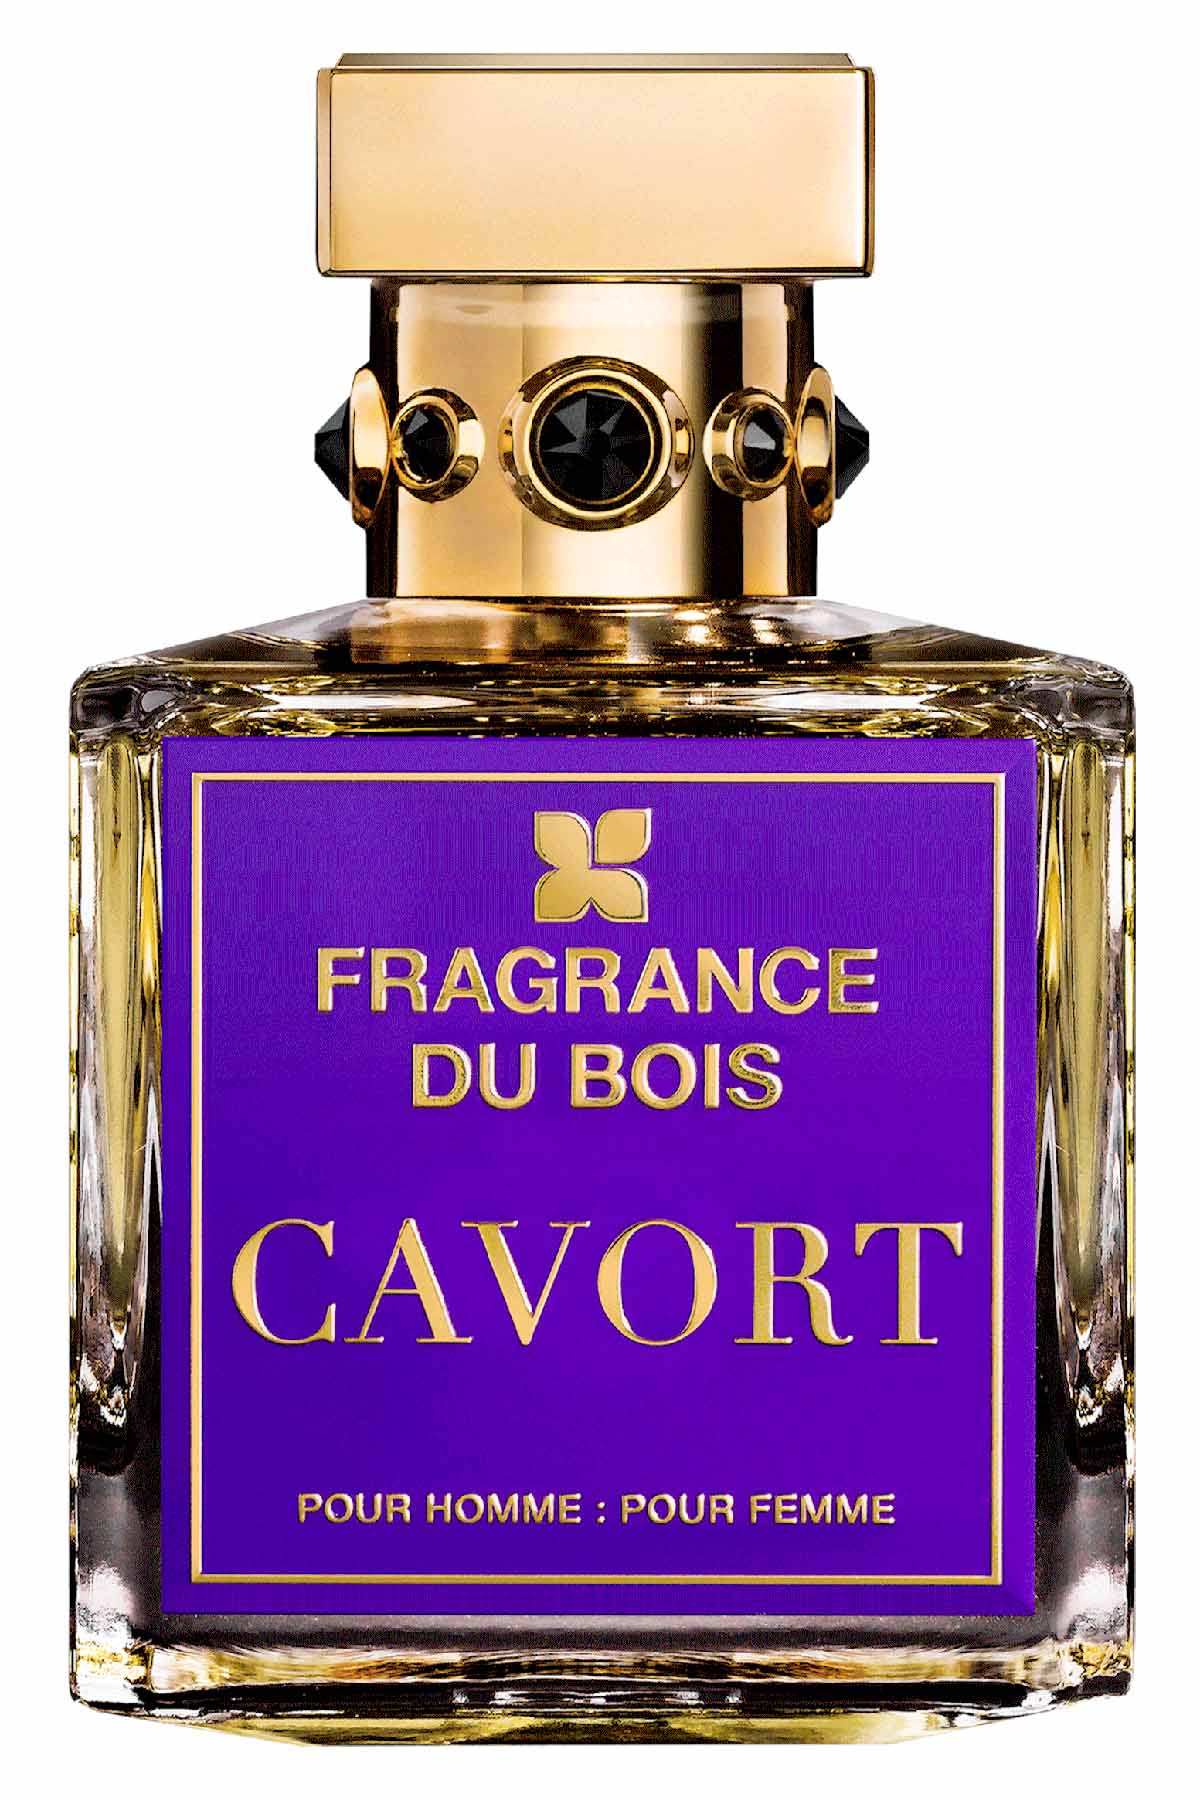 Cavort Parfum by Fragrance Du Bois